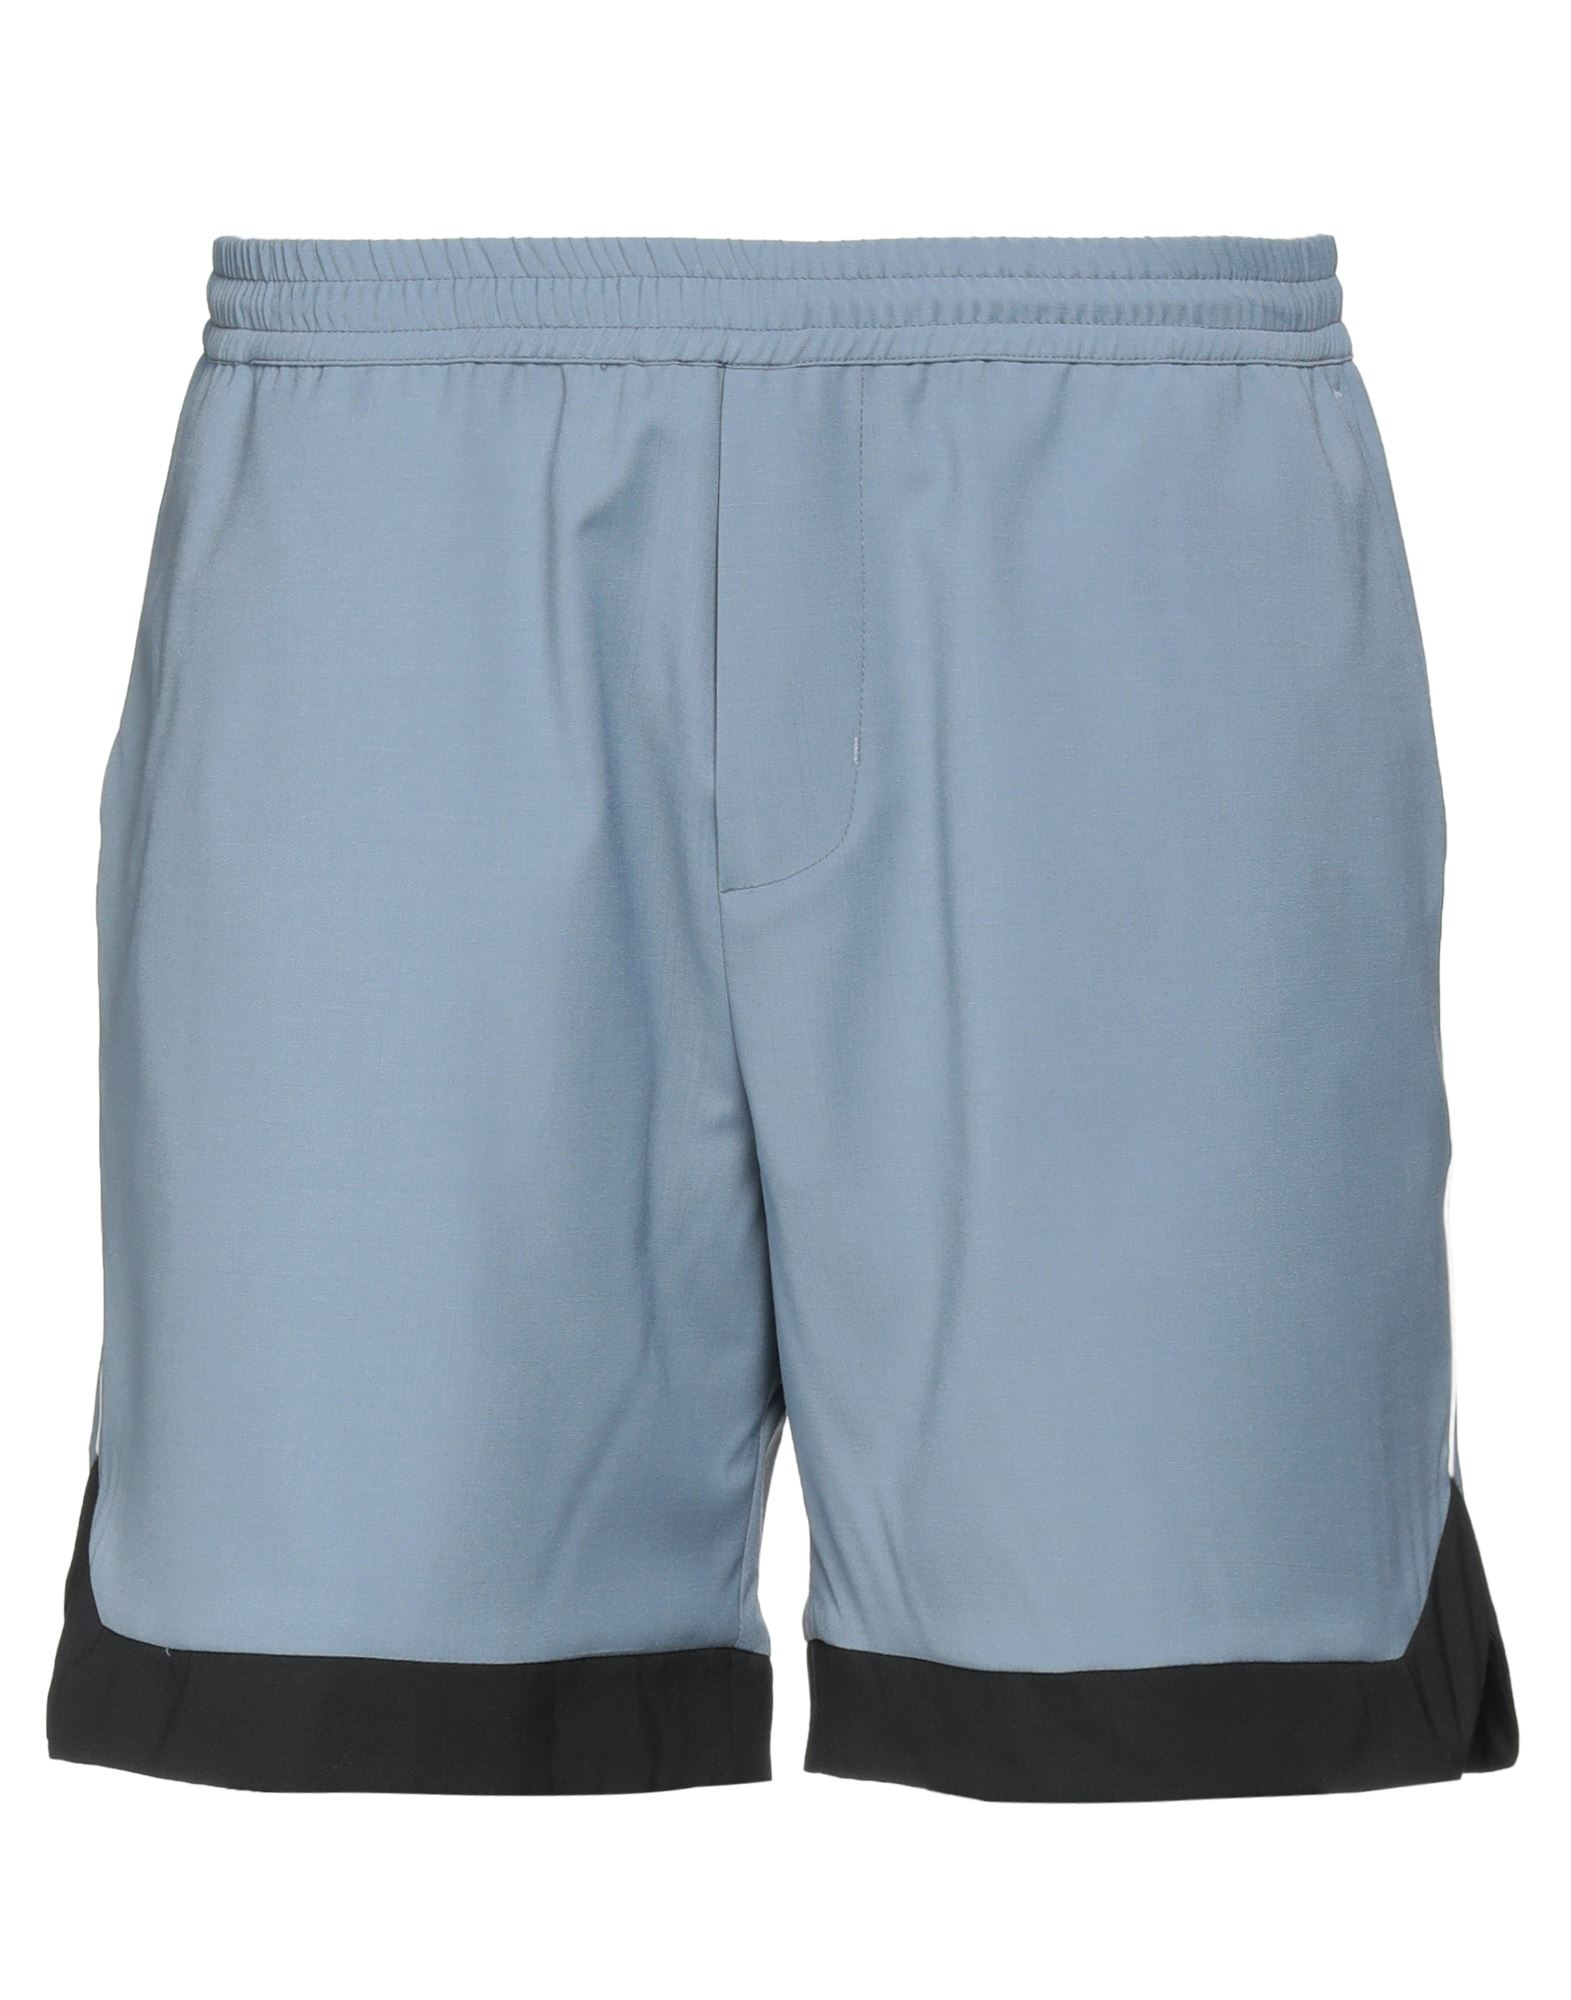 Low Brand Man Shorts & Bermuda Shorts Pastel Blue Size 4 Polyester, Wool, Elastane